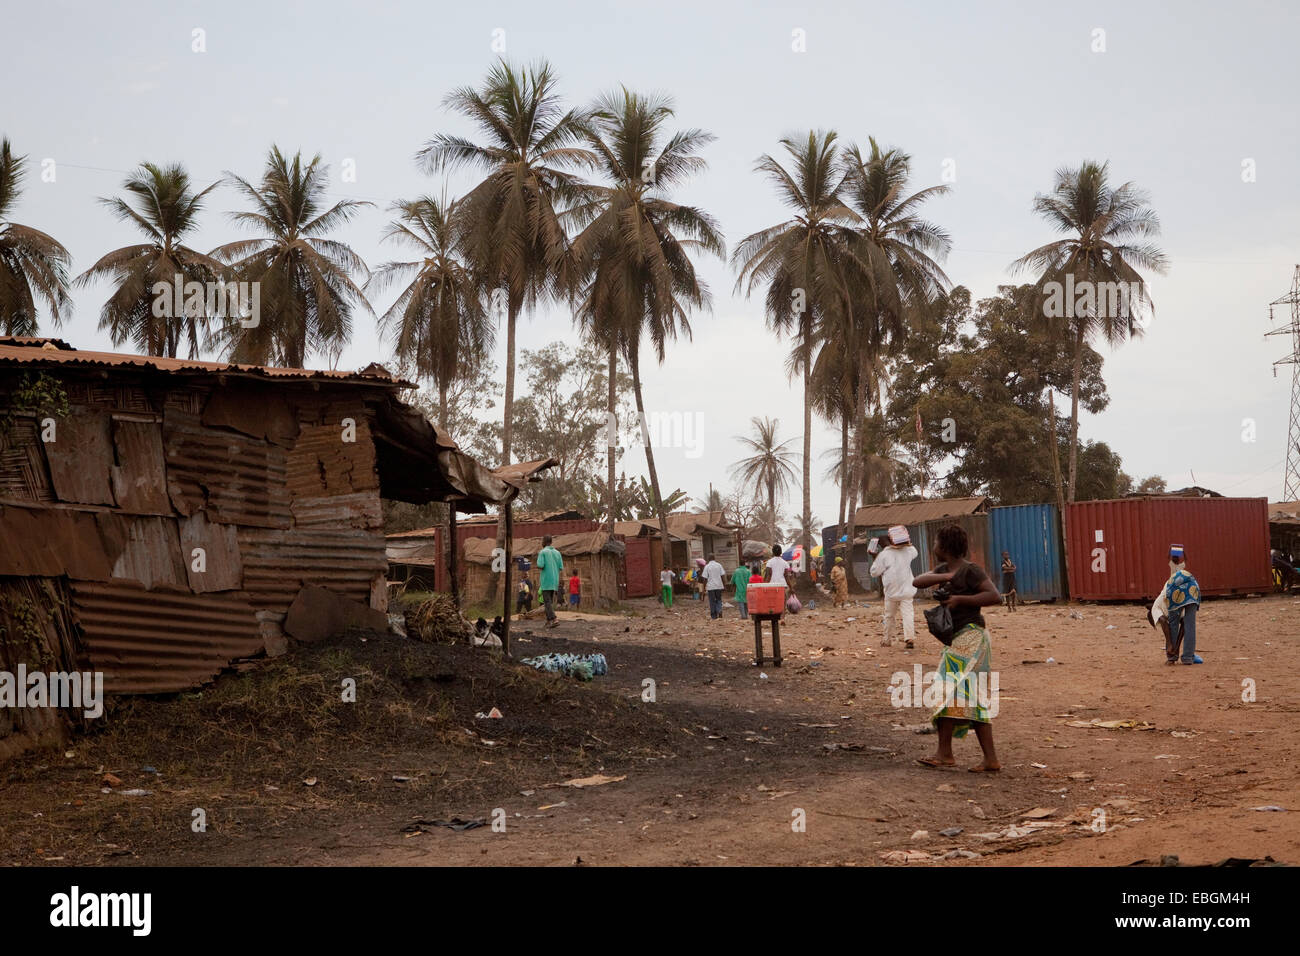 Slum area in Monrovia, Liberia, West Africa. Stock Photo